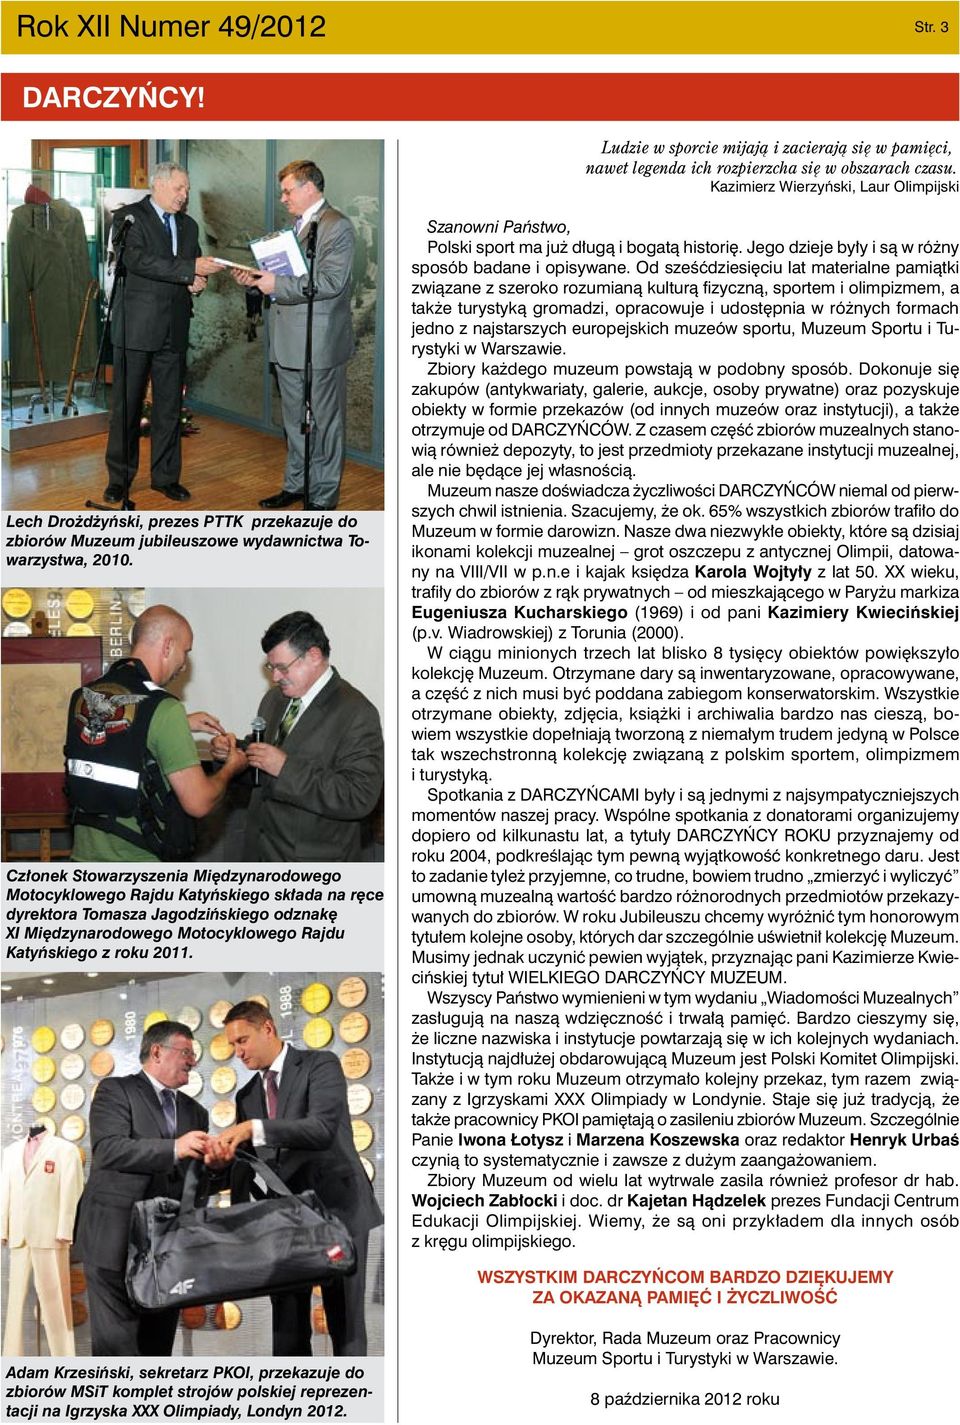 Członek Stowarzyszenia Międzynarodowego Motocyklowego Rajdu Katyńskiego składa na ręce dyrektora Tomasza Jagodzińskiego odznakę XI Międzynarodowego Motocyklowego Rajdu Katyńskiego z roku 2011.